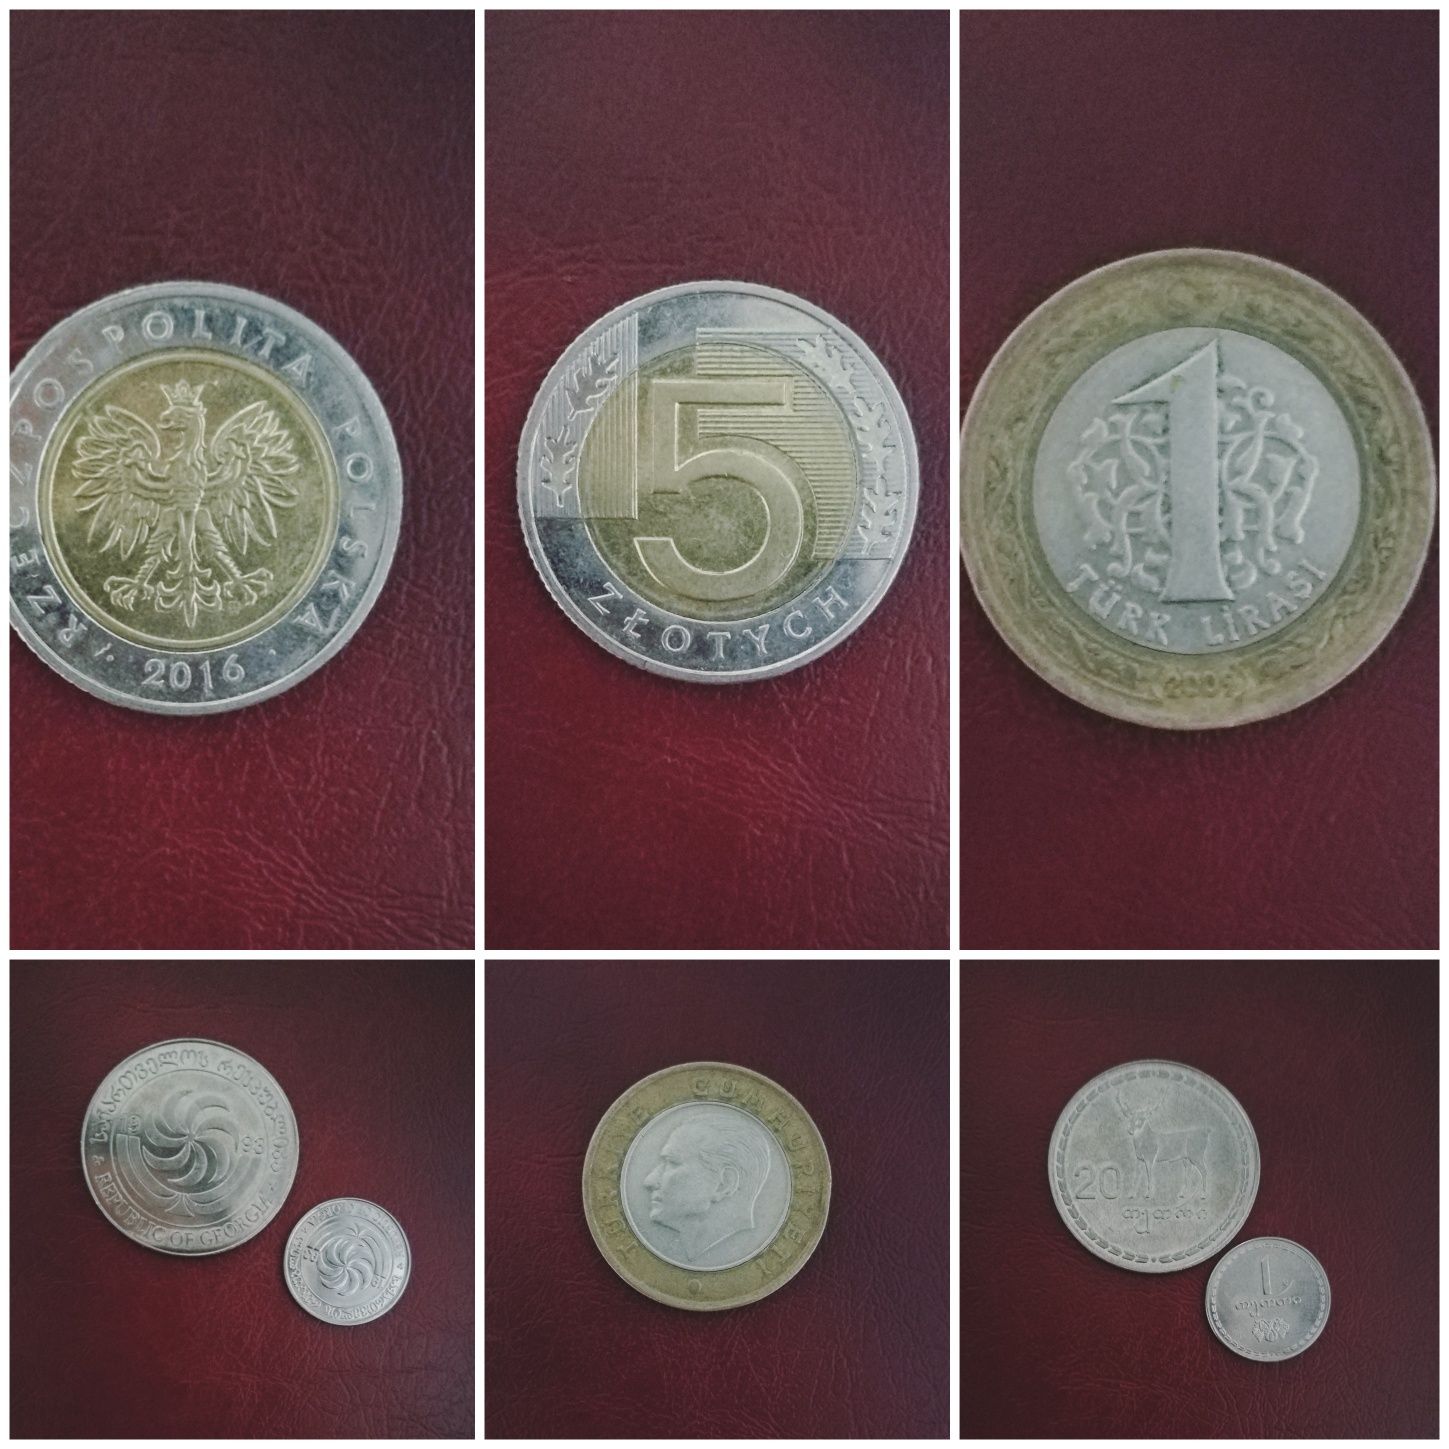 Все монеты за 110 гривен / Турция / Грузия / Польша